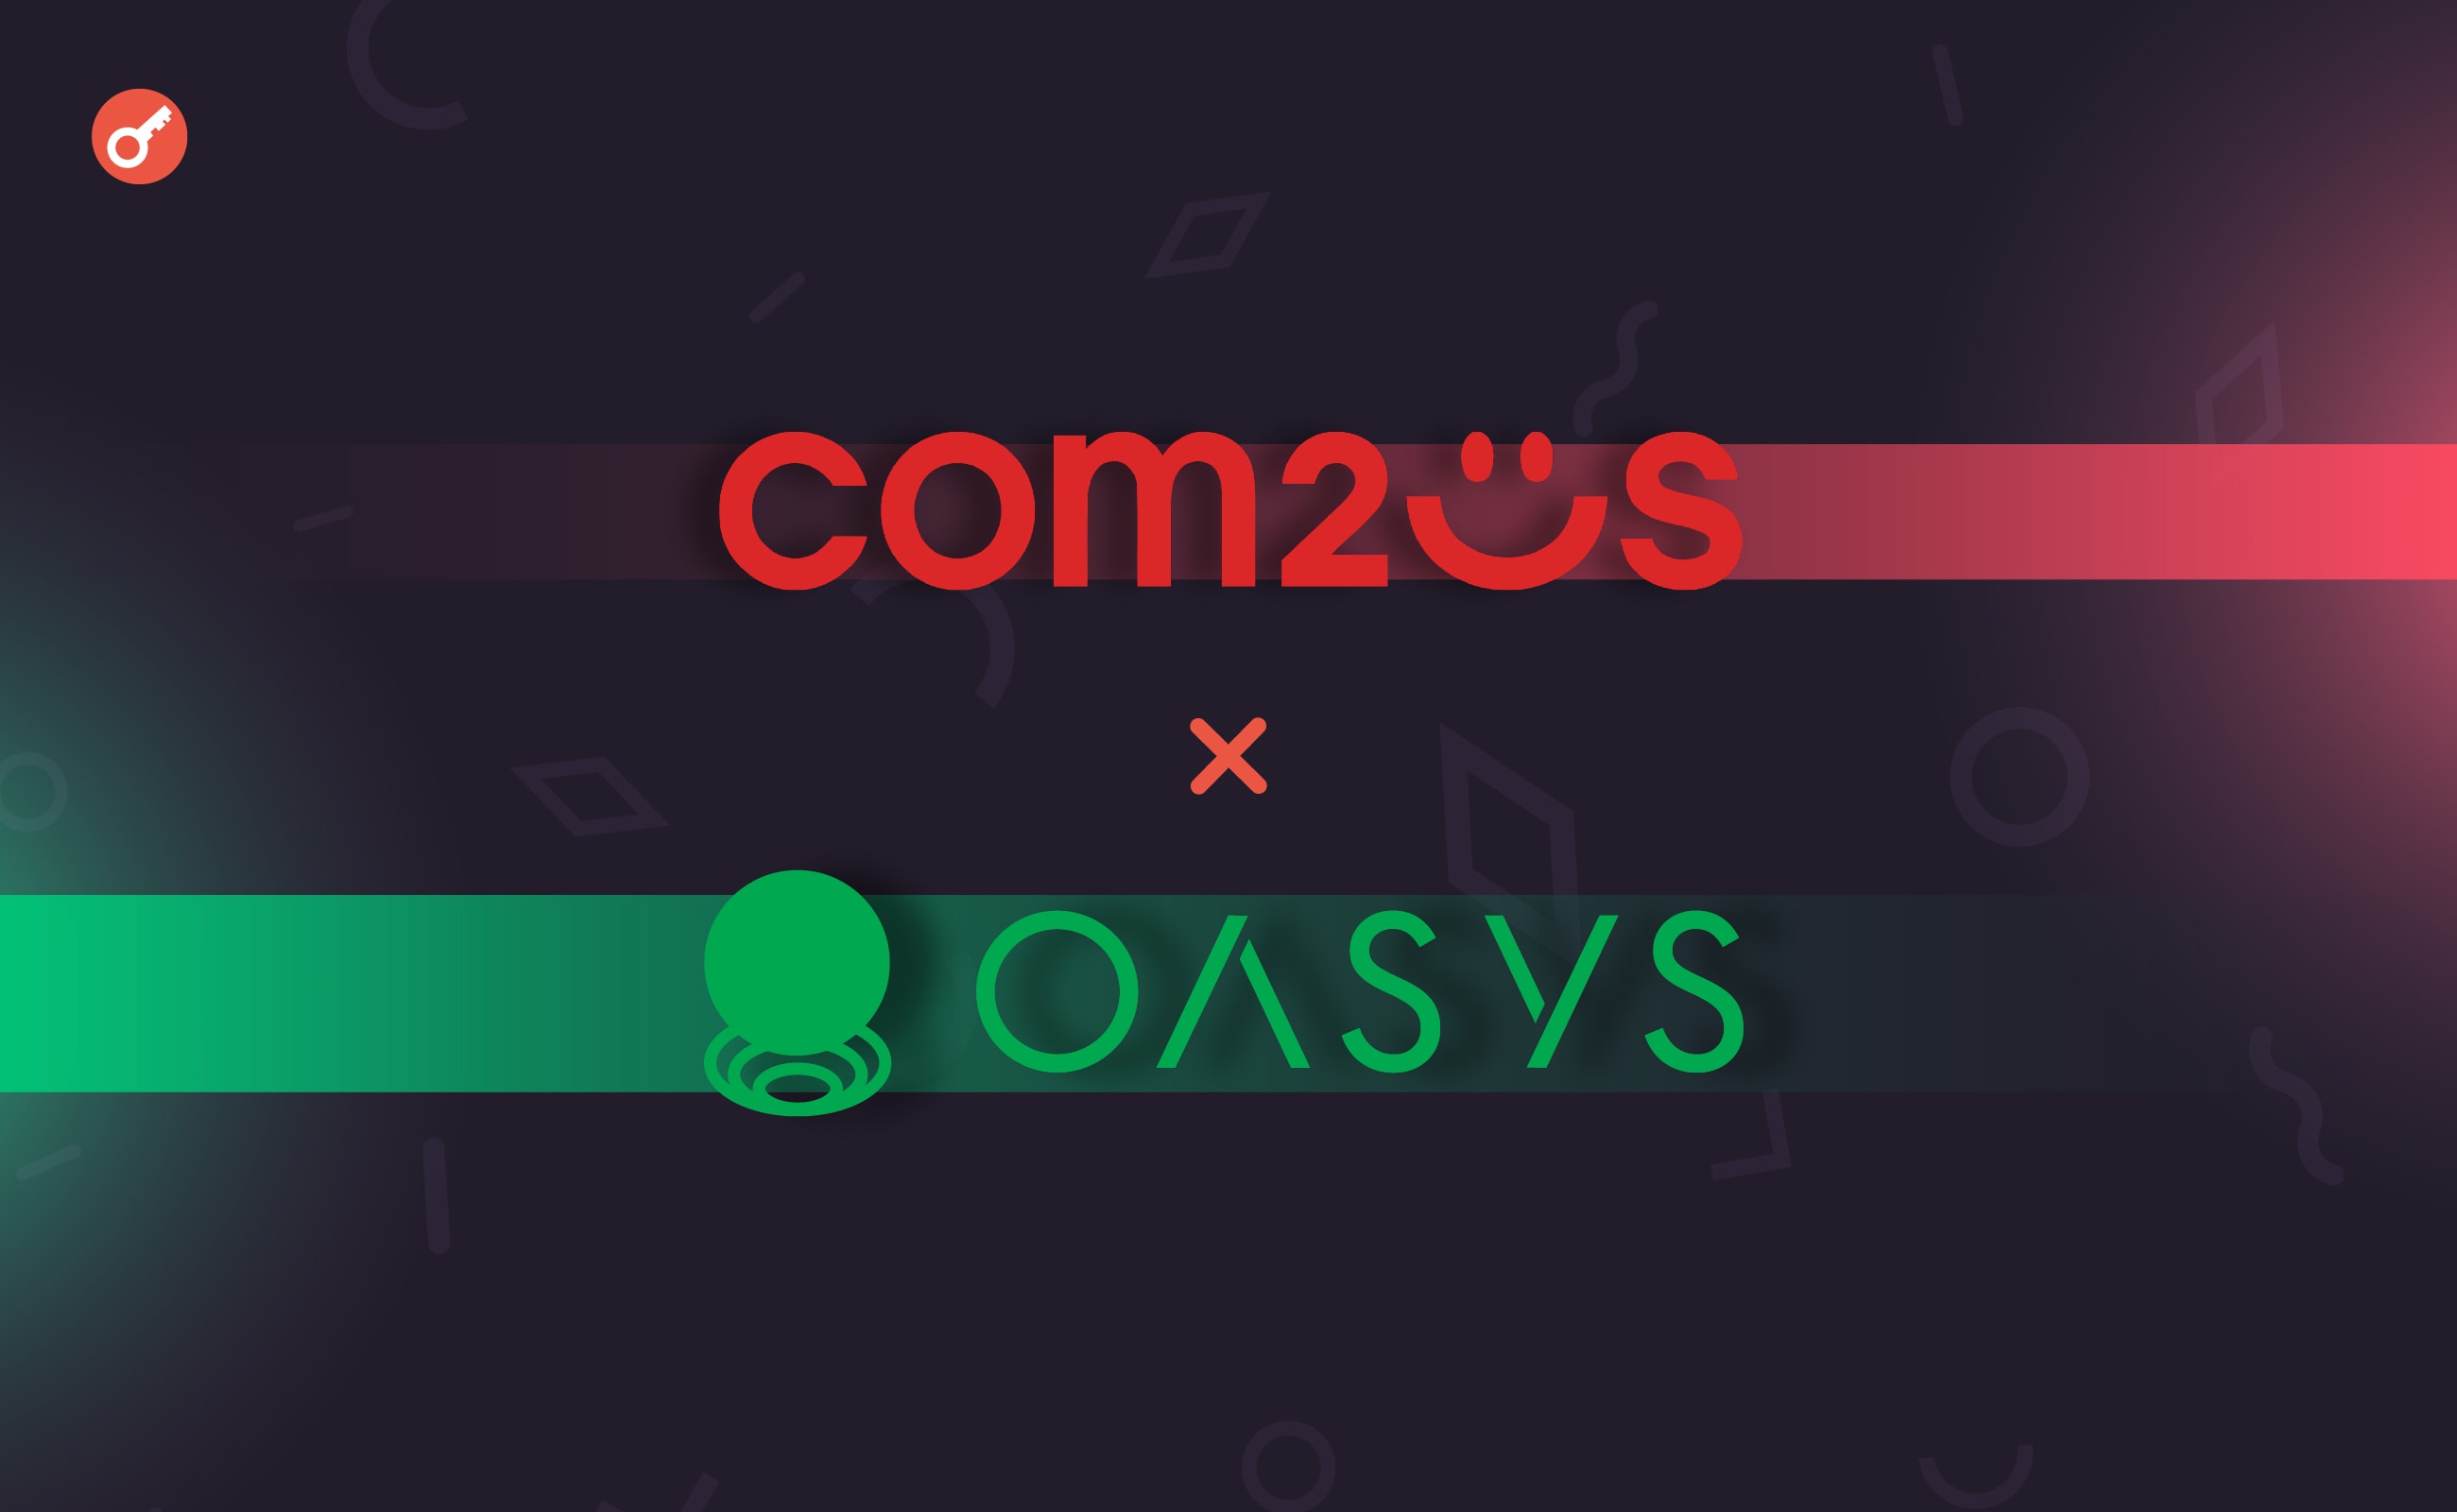 Игровая студия Com2uS объявила о партнерстве с платформой Oasys. Заглавный коллаж новости.